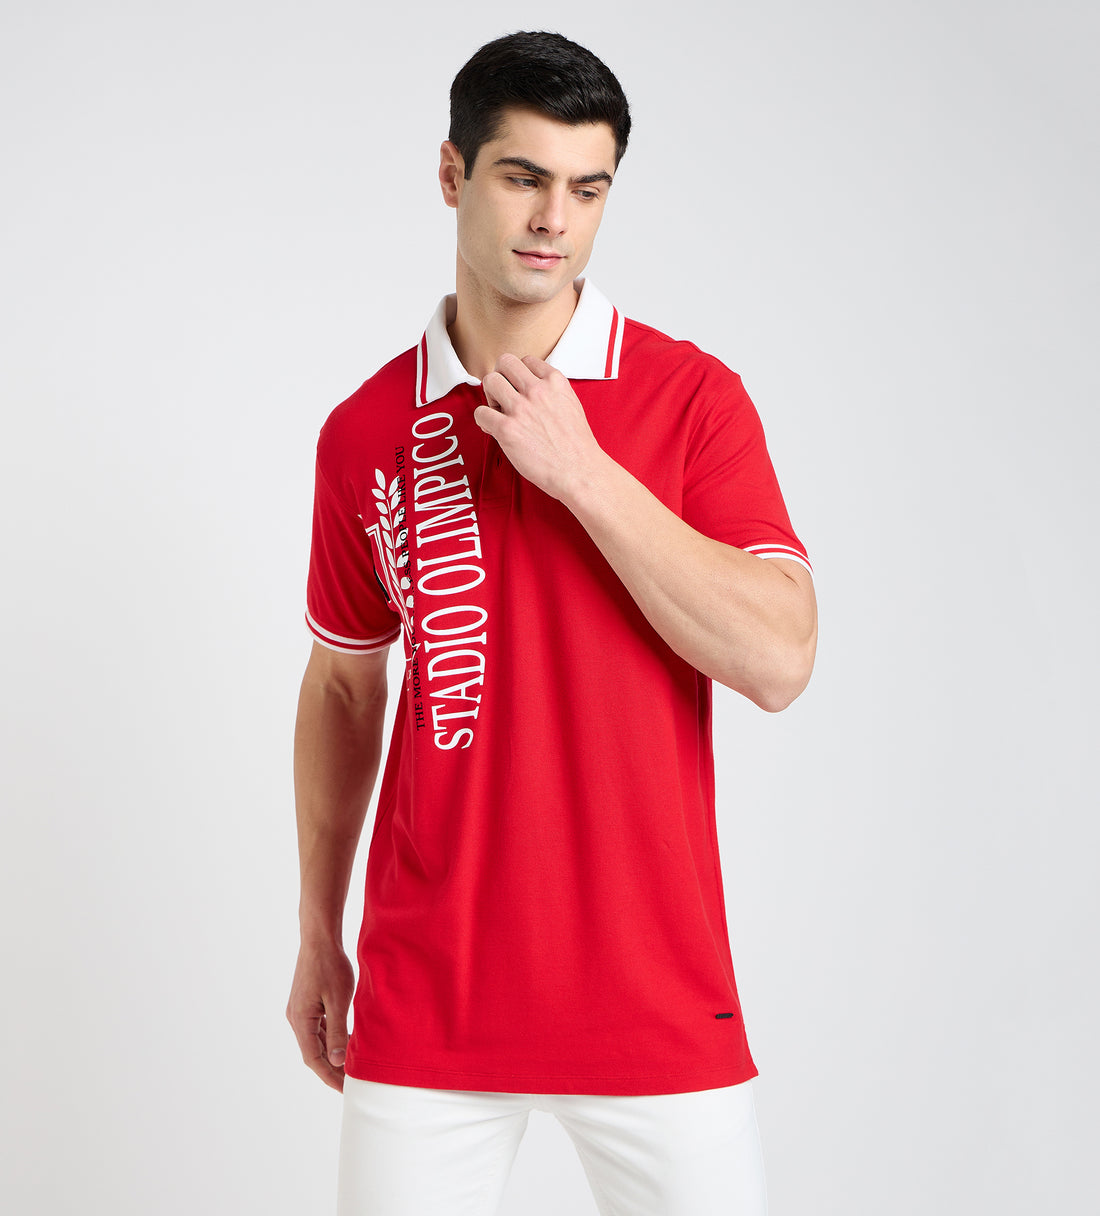 Red 21 Polo T-shirt For Men - EDRIO